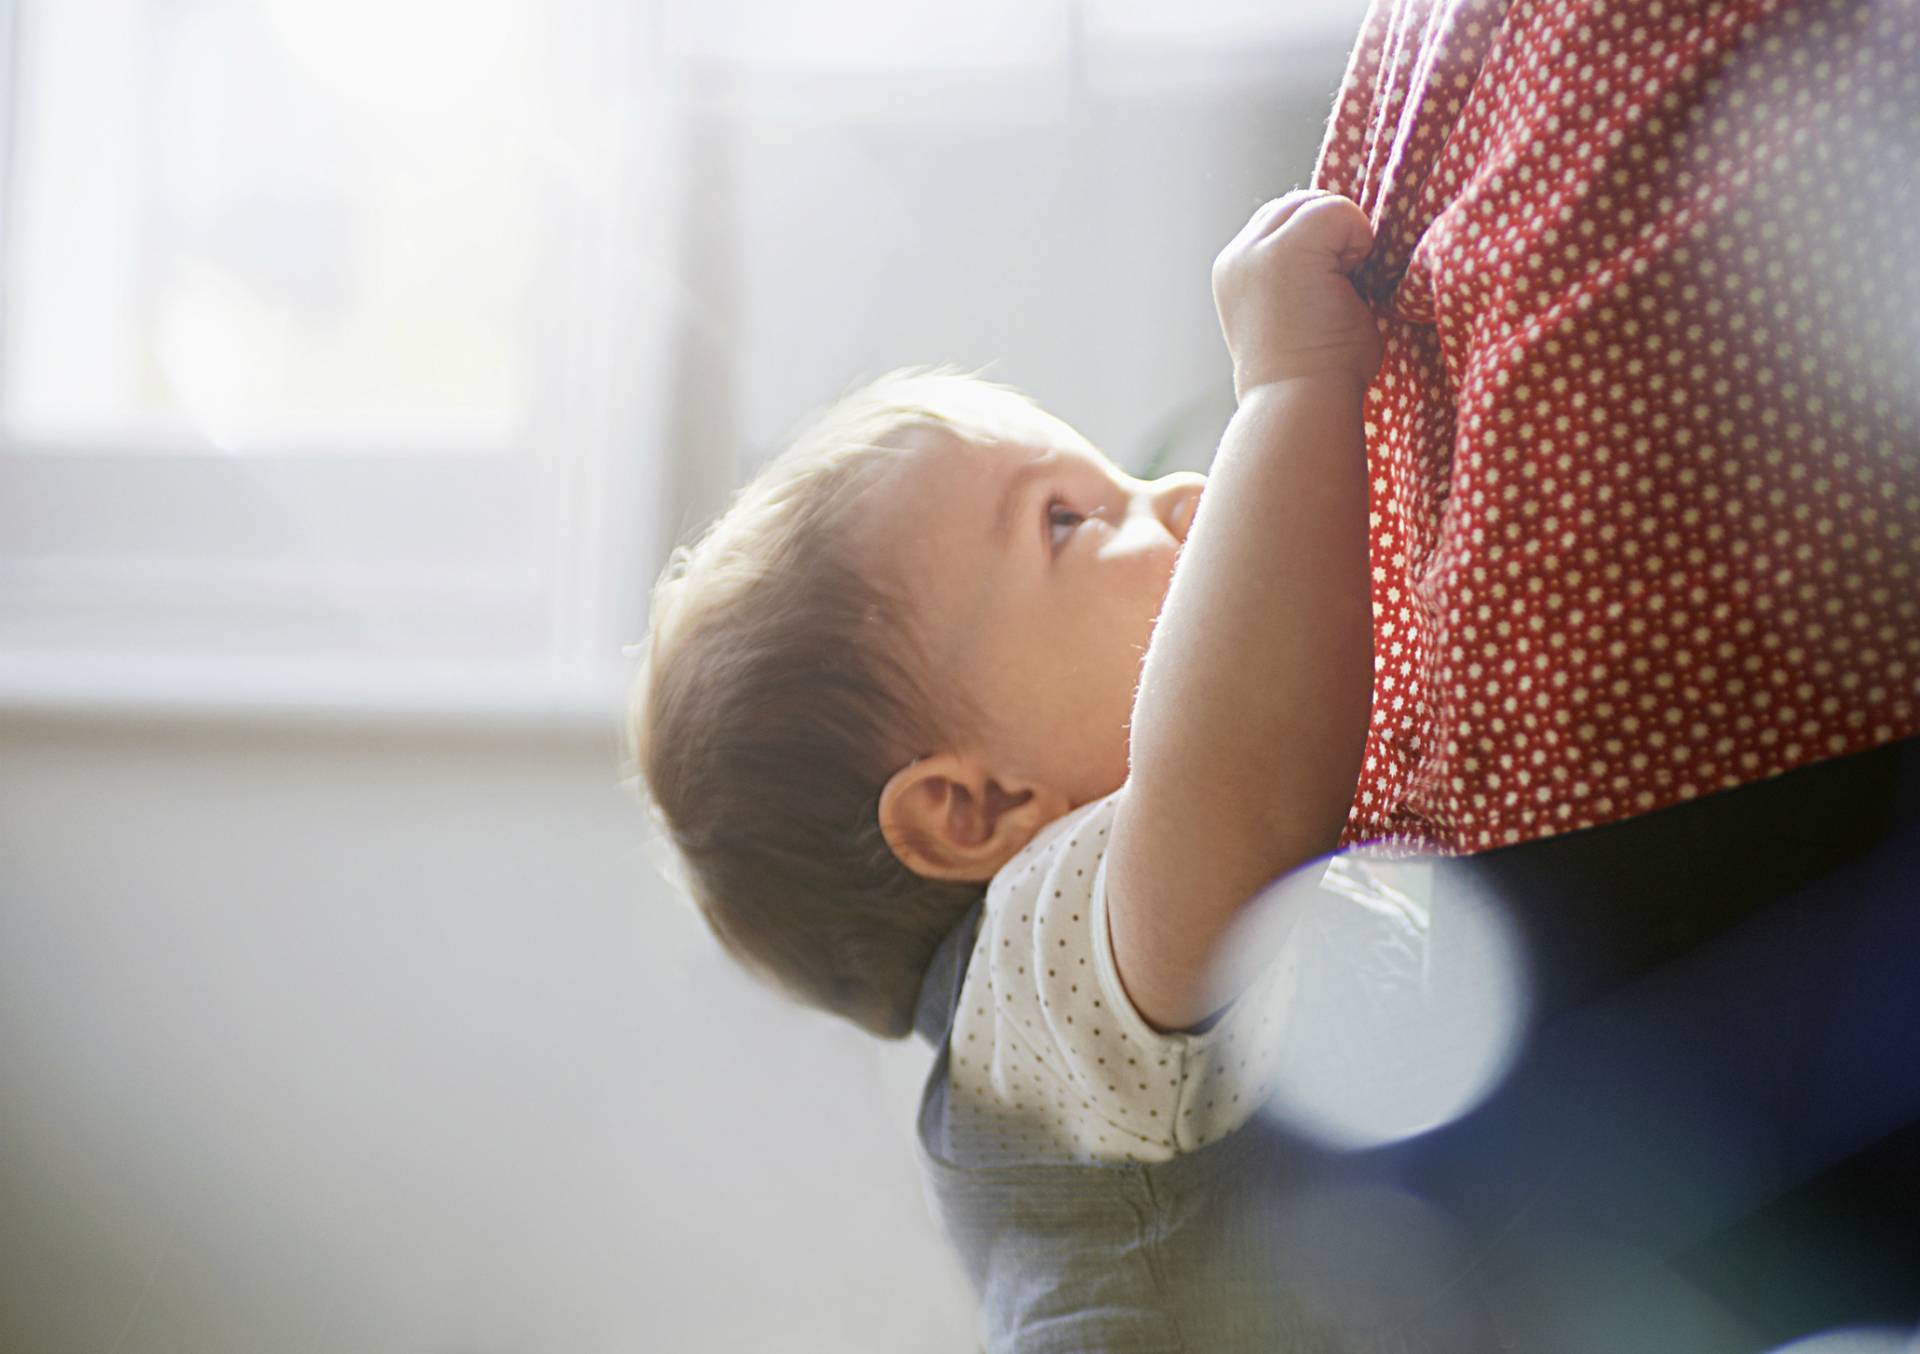 Неумение ребенка сидеть в 6-7 месяцев: причины задержки развития